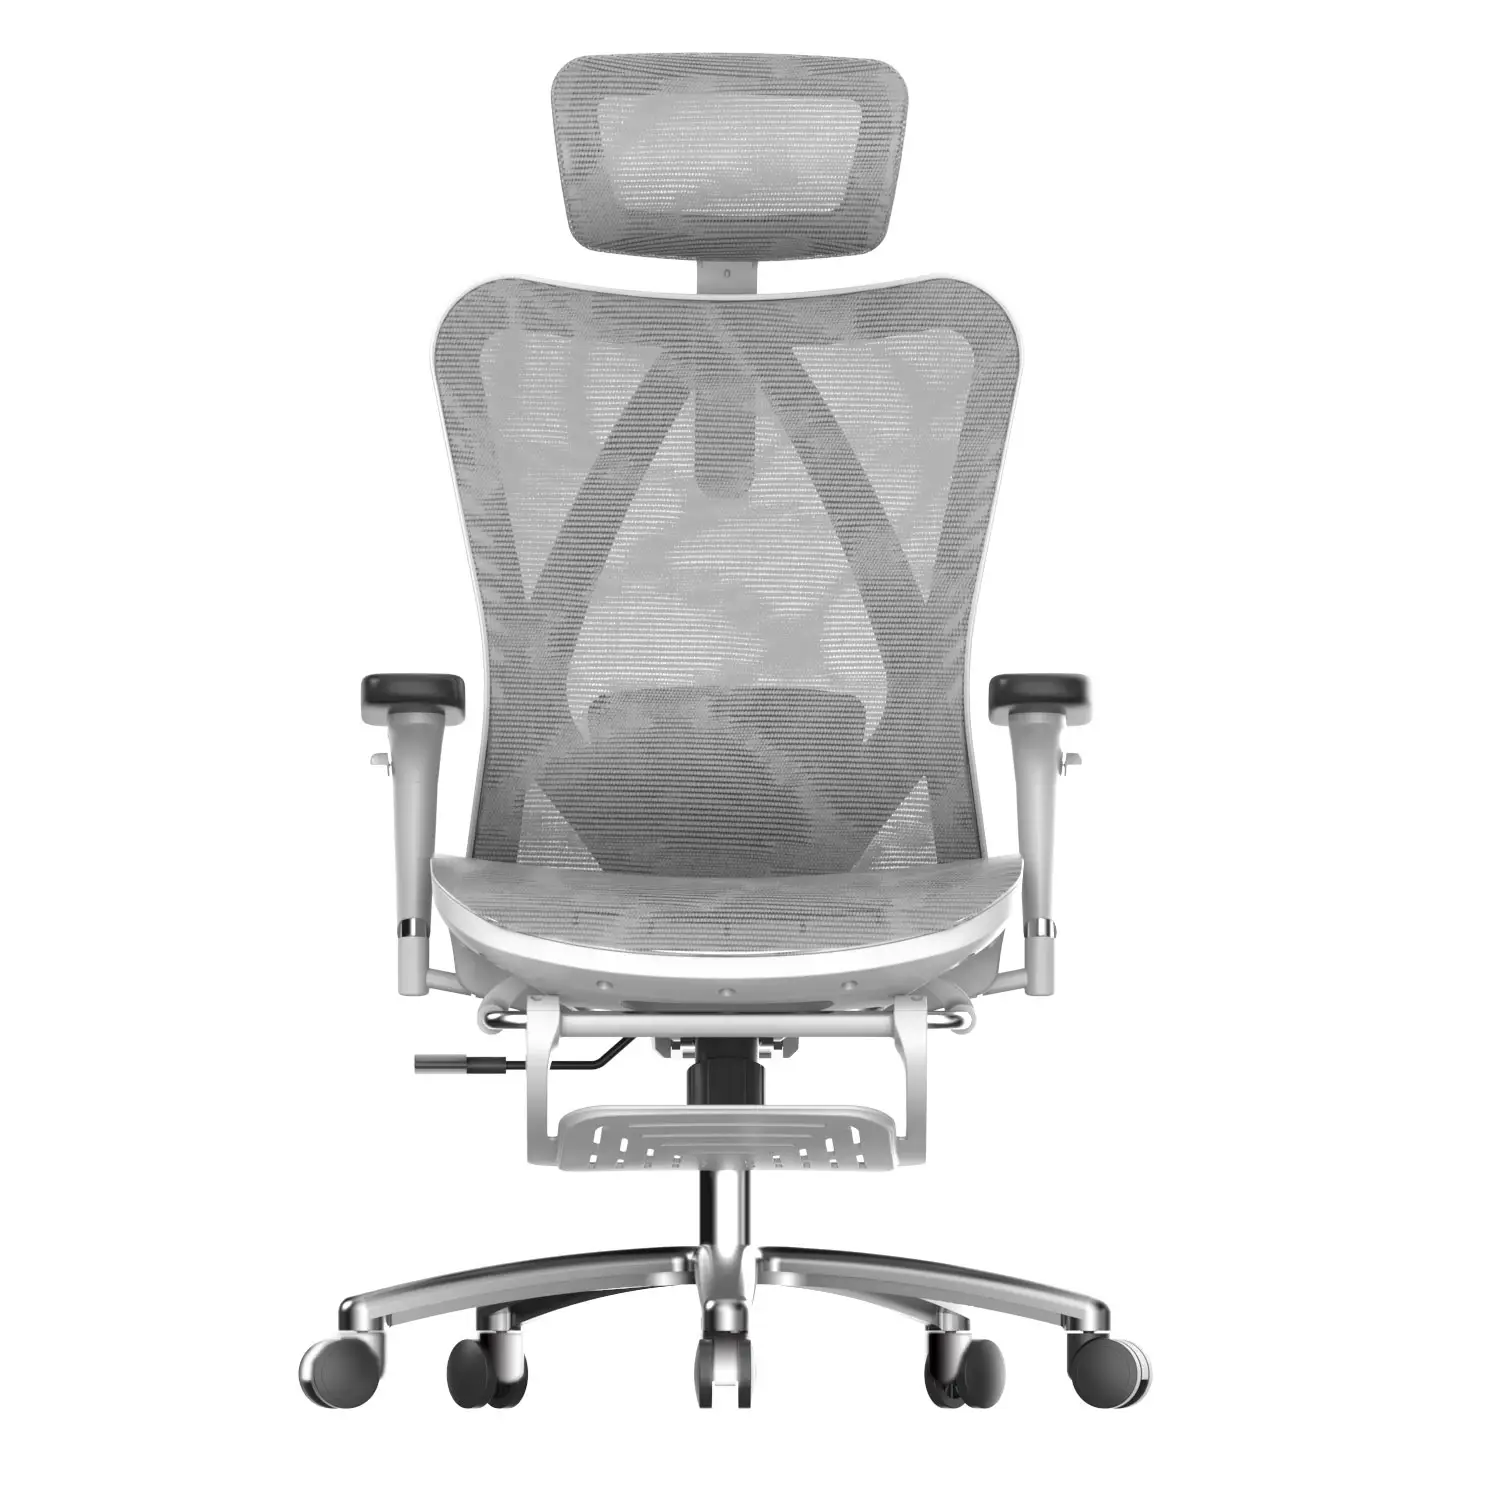 SIHOO TITO M57, Лучший современный стиль, подвижный Исполнительный 3D подлокотник, эргономичный офисный стул